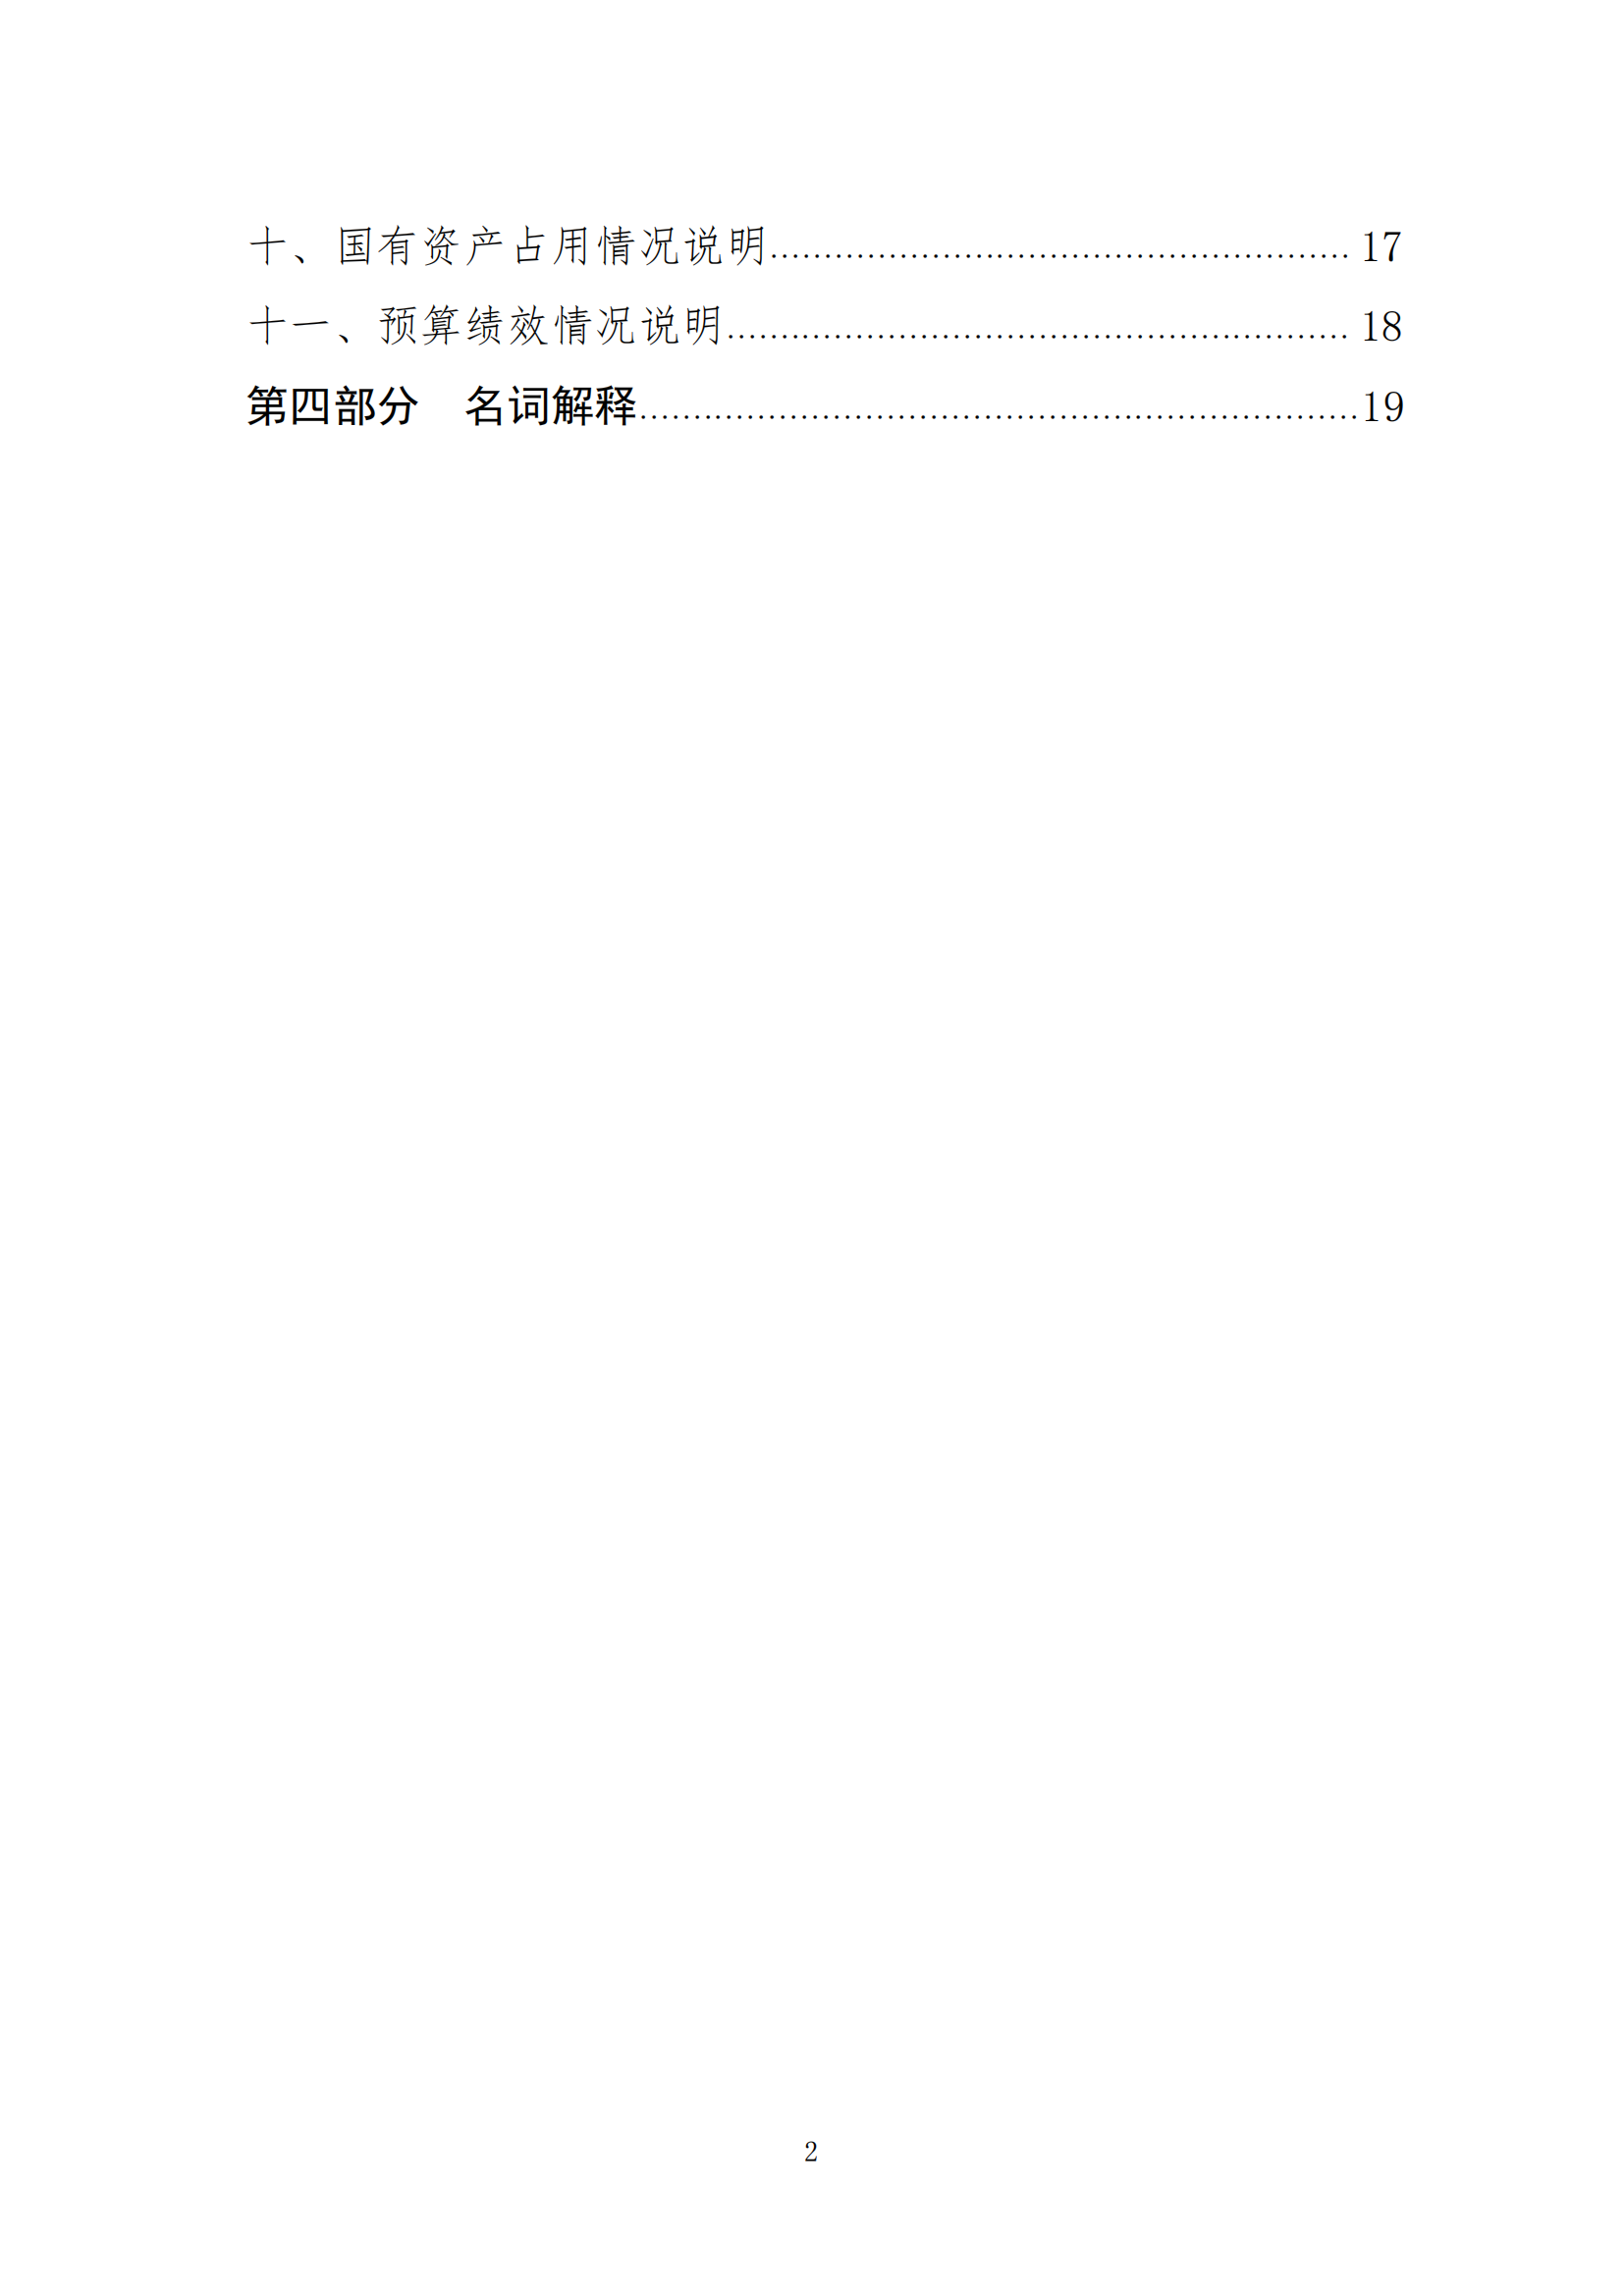 中国财政杂志社2021年度决算公开(8月10日周三统一公开）_02.png